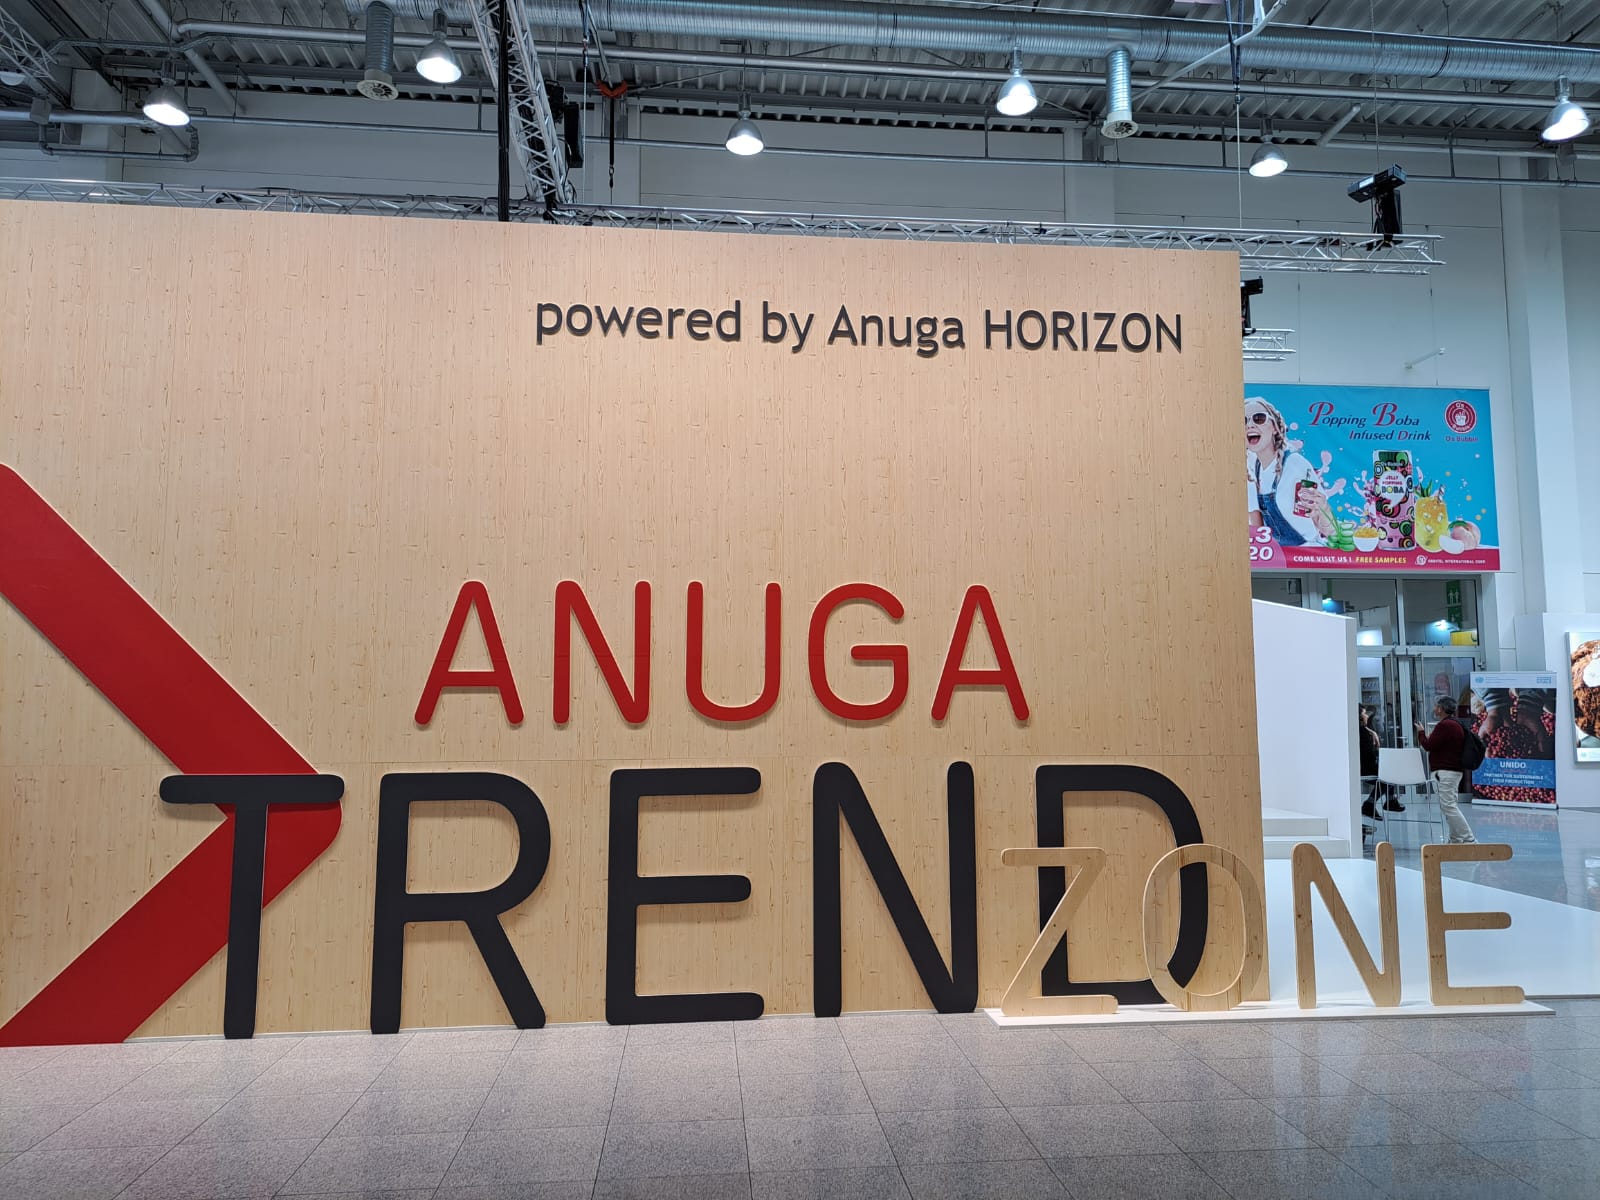 Anuga ya abrió sus puertas y  presenta las principales novedades de 2023
